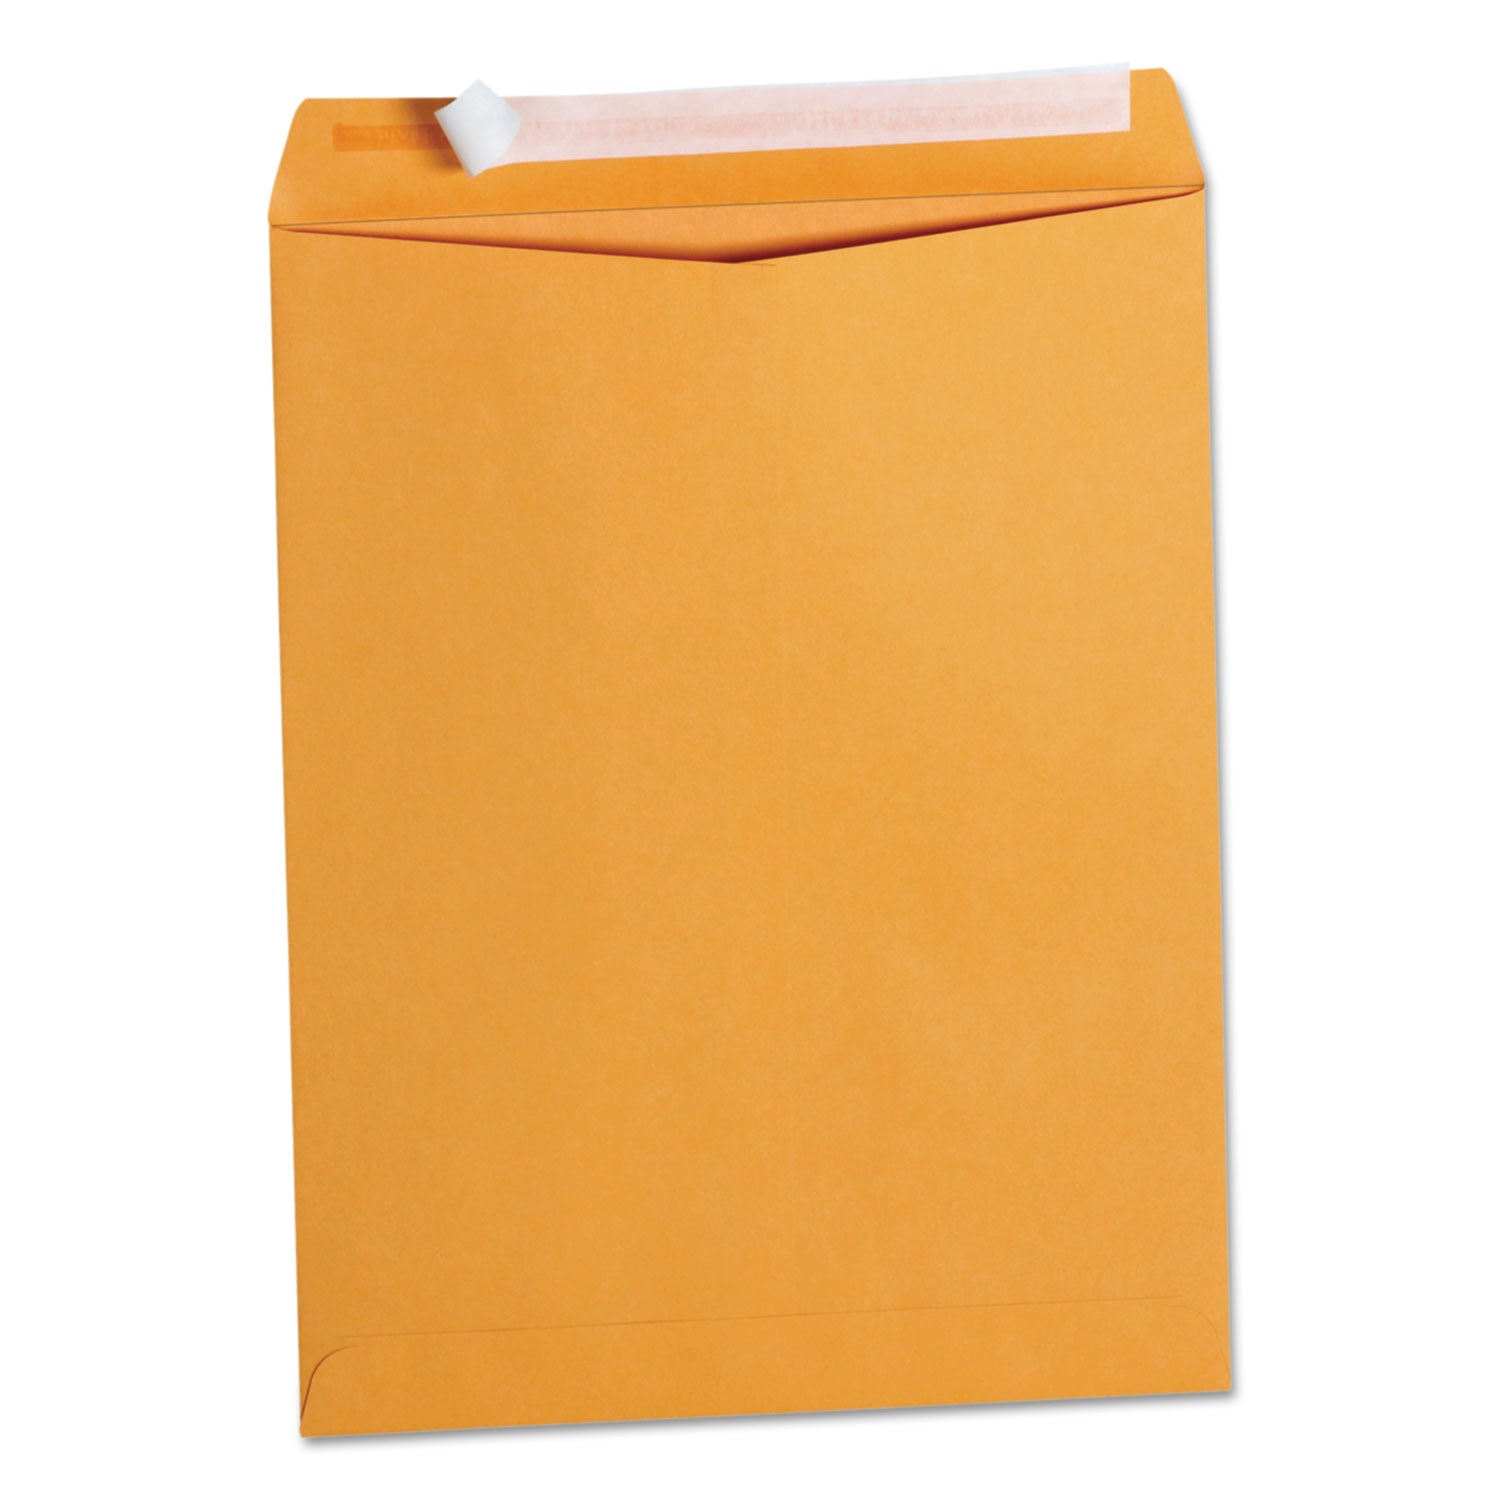 Peel Seal Strip Catalog Envelope, #13 1/2, Square Flap, Self-Adhesive Closure, 10 x 13, Natural Kraft, 100/Box - 